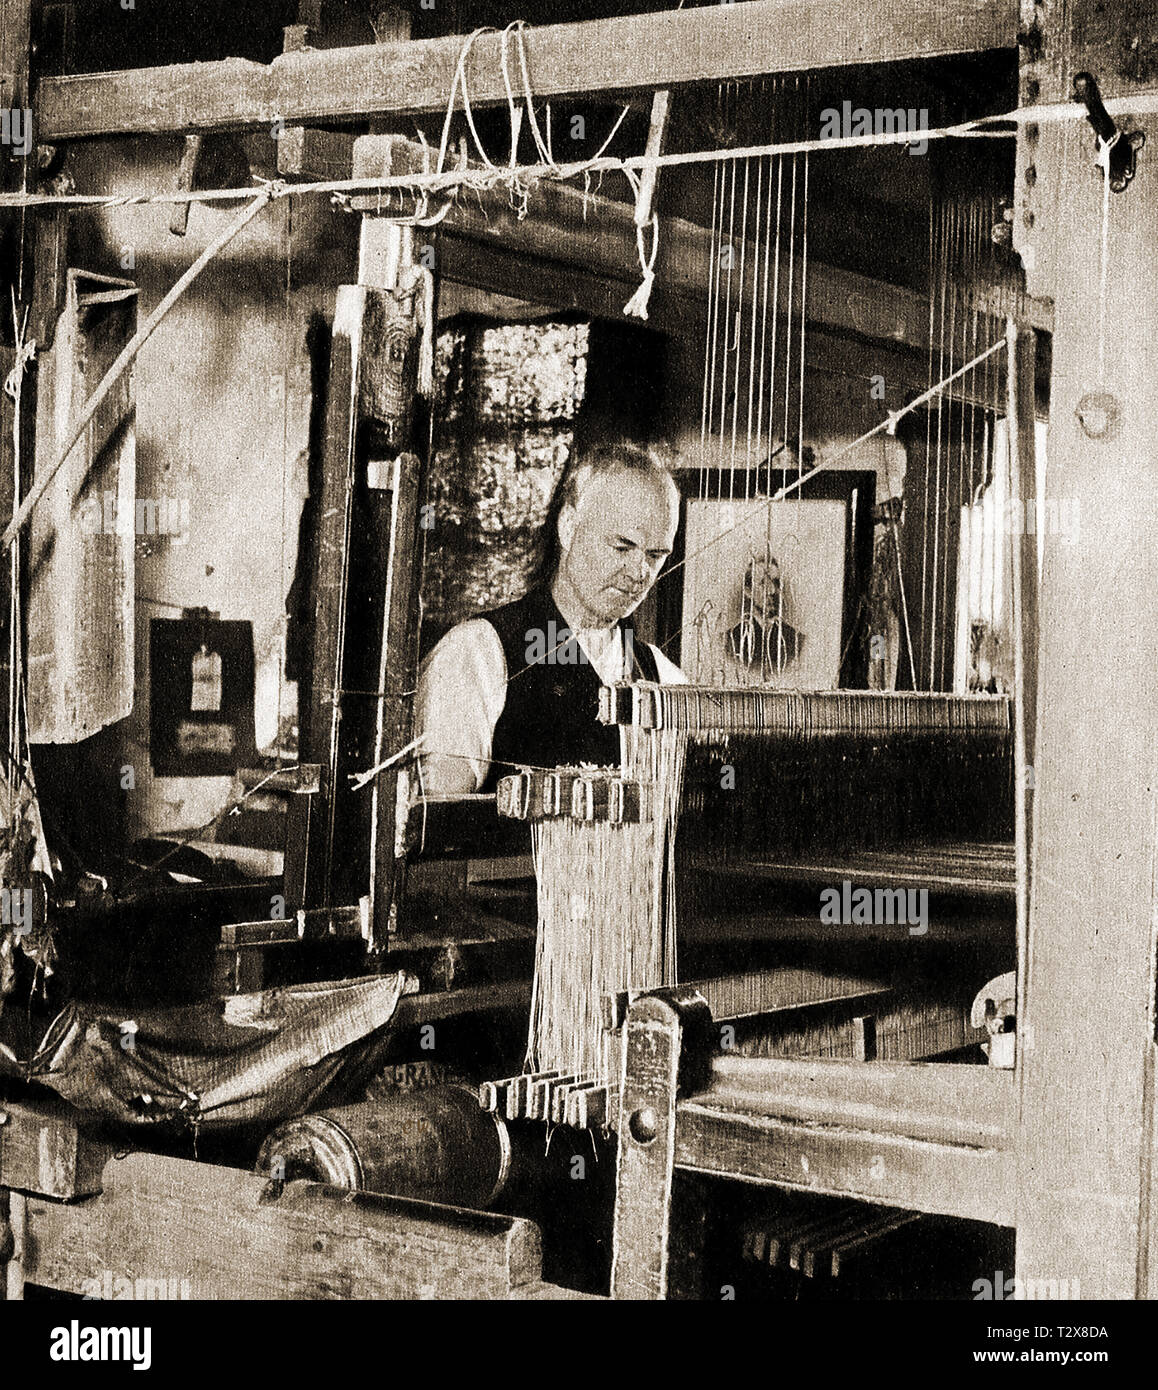 Un vintage photo d'un village écossais (Kilbarchan) kilt weaver manufacturing kilts, un village aujourd'hui disparu -commerce Le village nom signifie 'Cell de Saint barchan" Banque D'Images